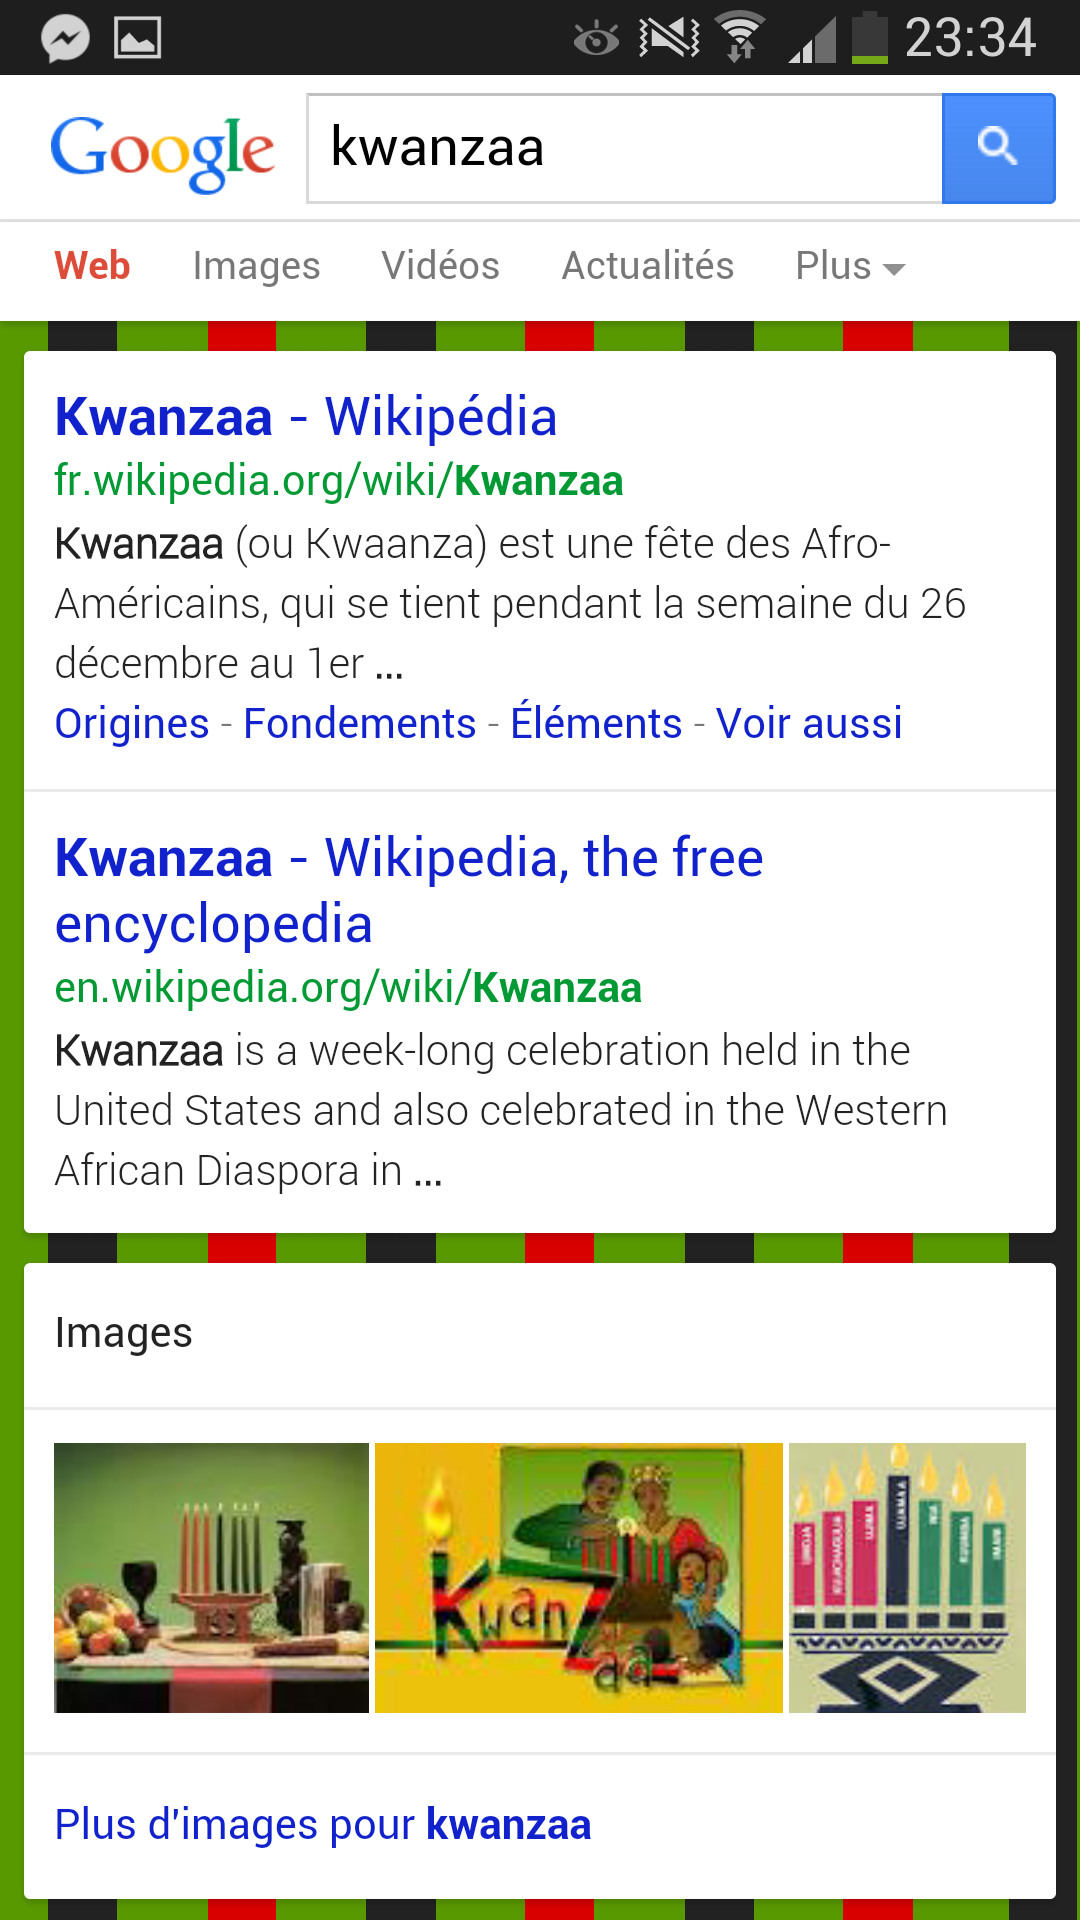 Easter Egg Google : tapez une recherche contenant les mots "Christmas" ou "Kwenzaa" et admirez